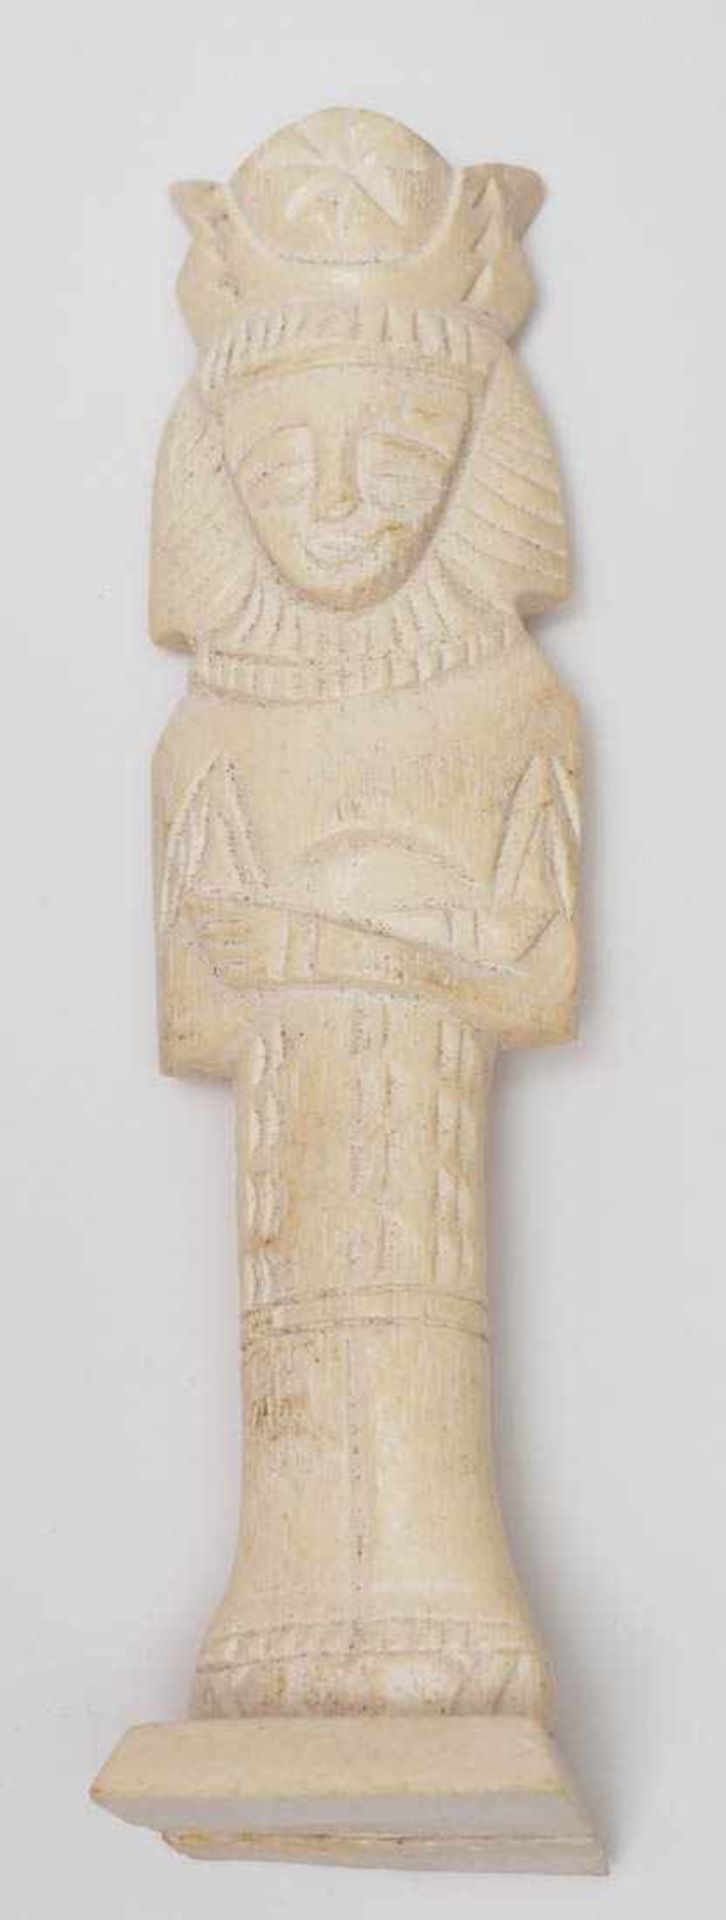 Schachspiel, Ägypten Figuren aus Bein. H. des Königs 15,5cm. Dazu intarsiertes Brett. - Image 8 of 10